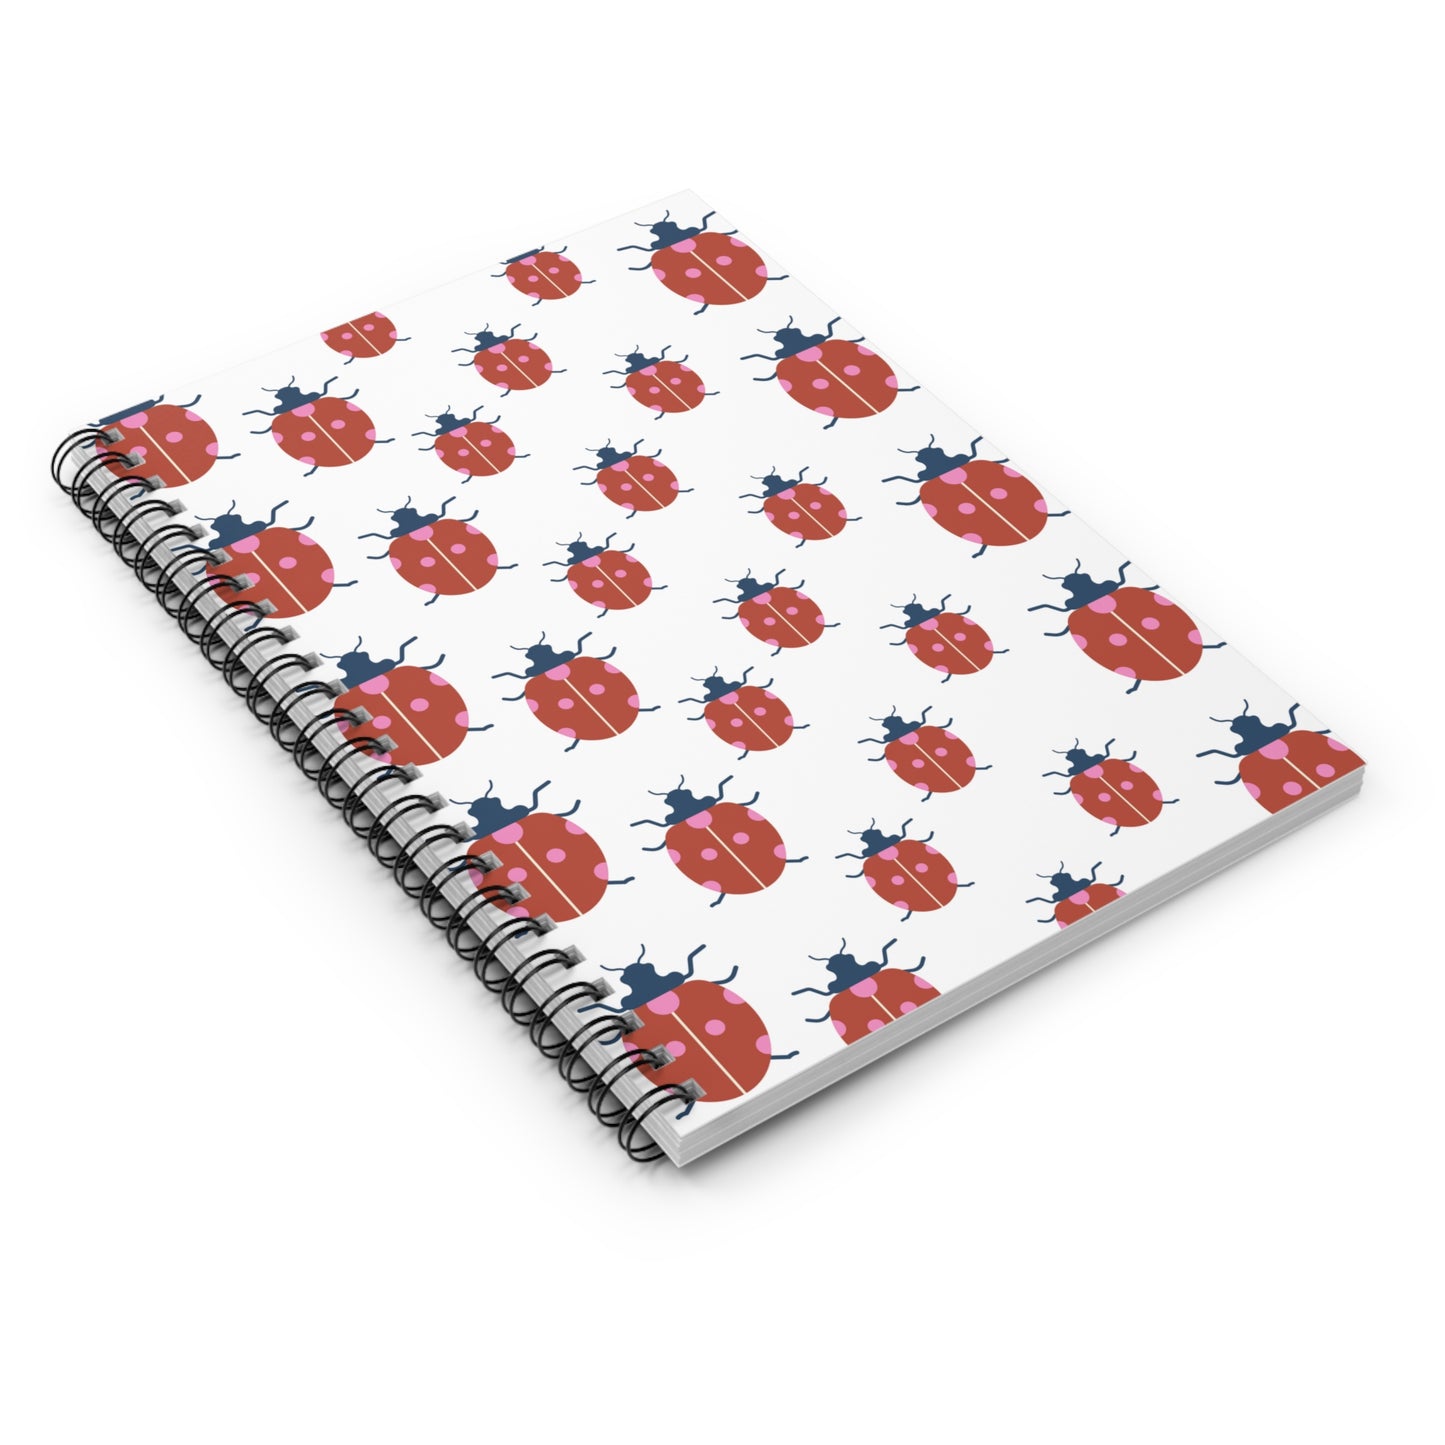 Ladybug Spiral Notebook - Ruled Line